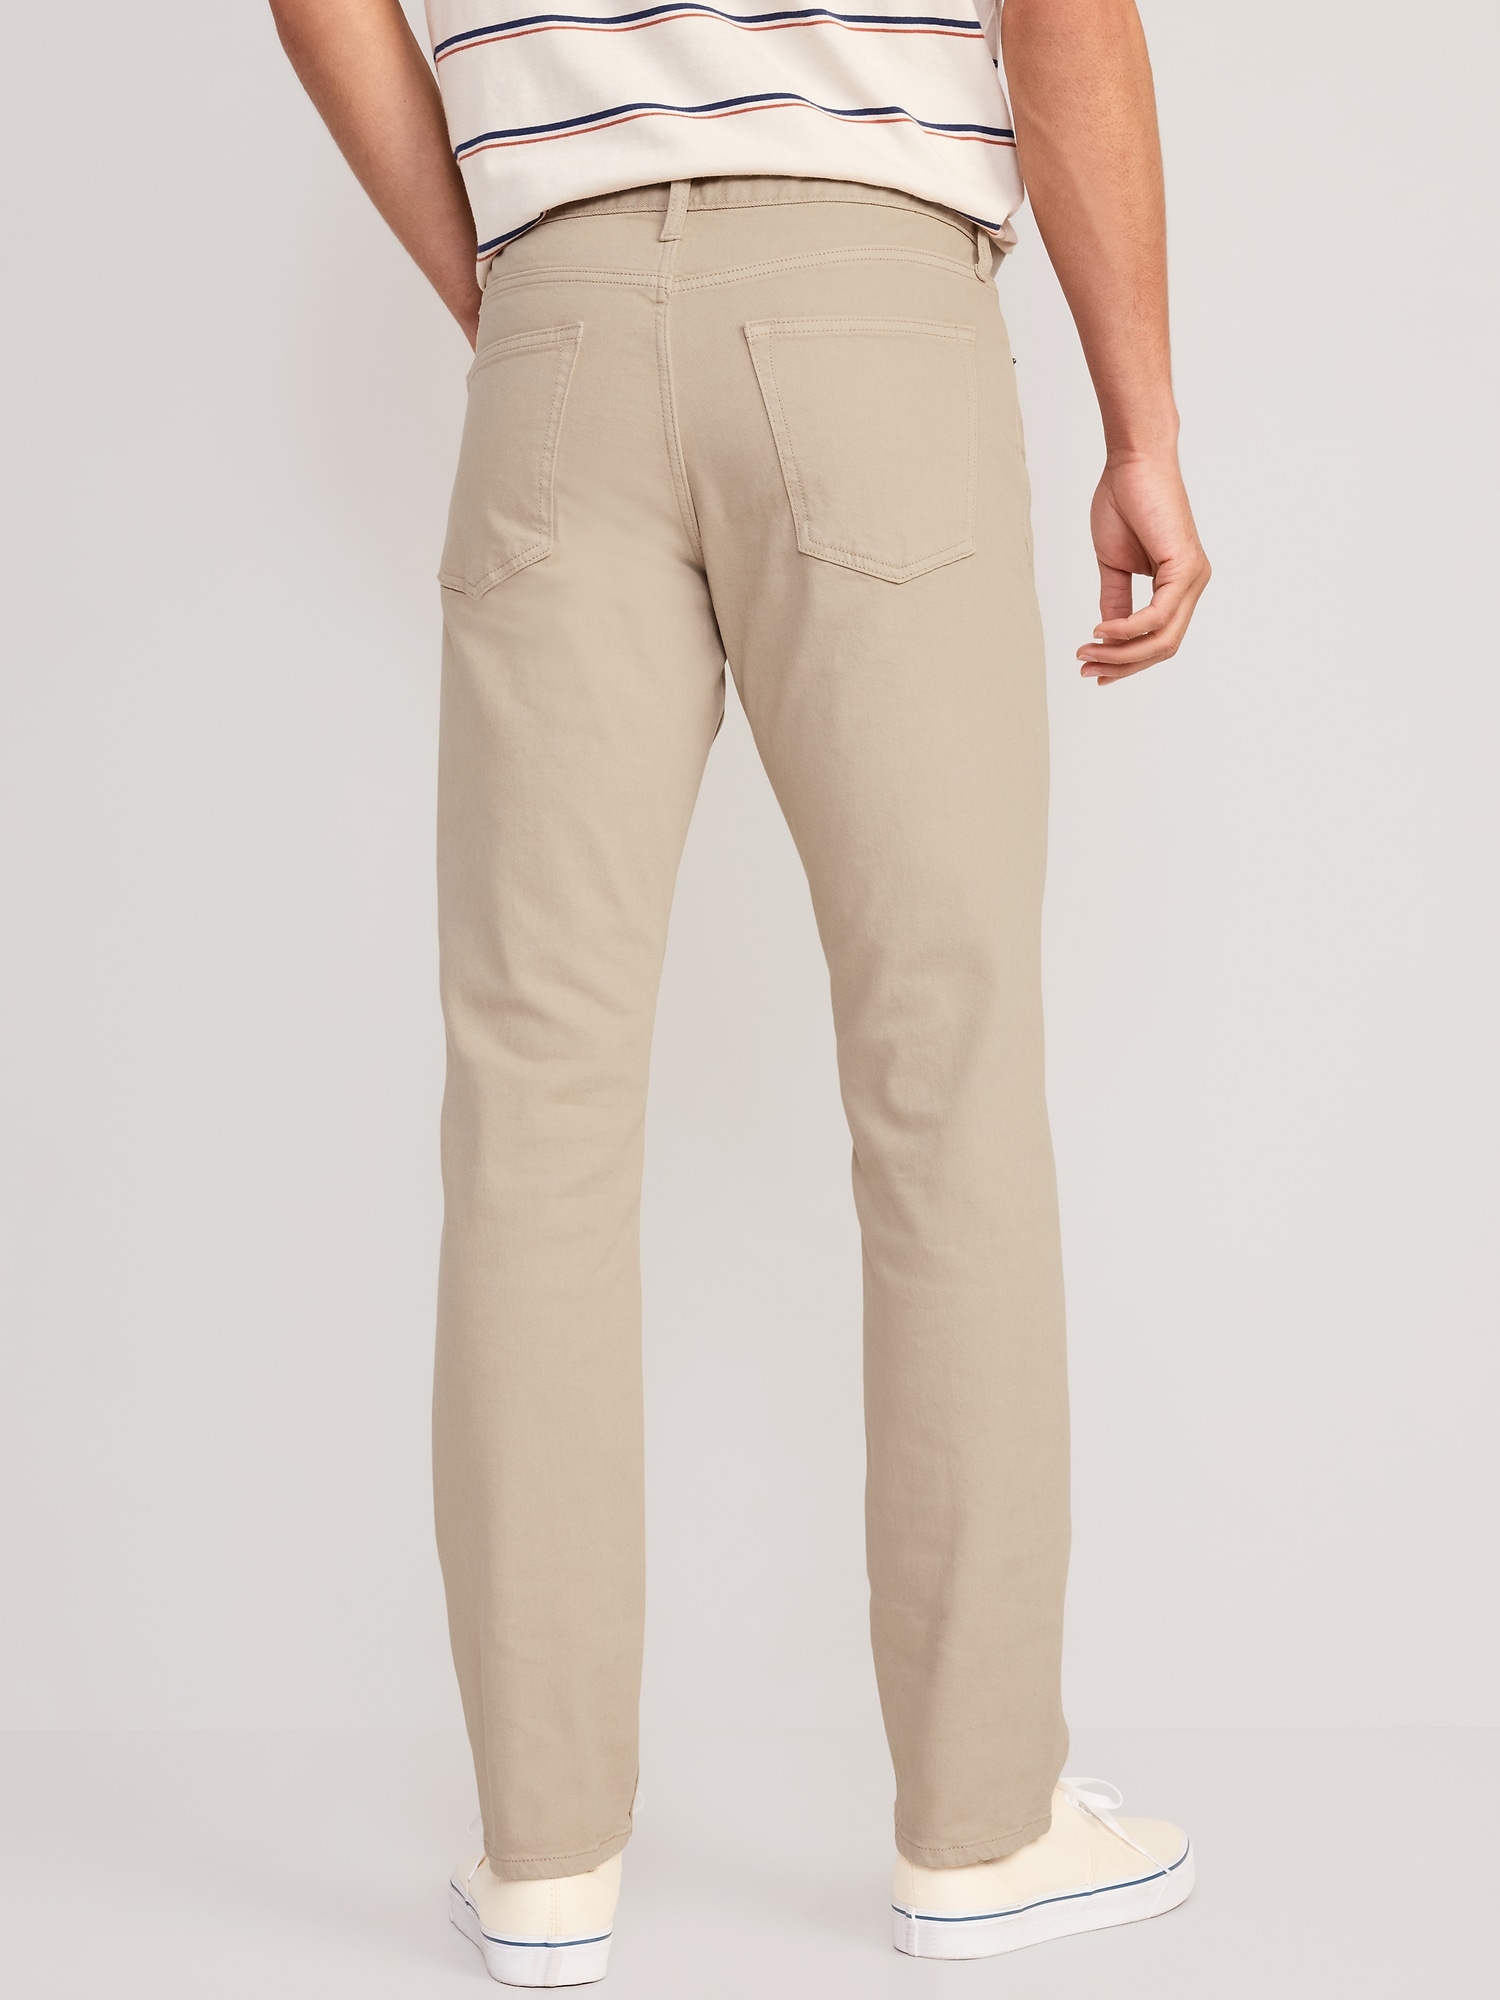 Slim Five-Pocket Pants for Men